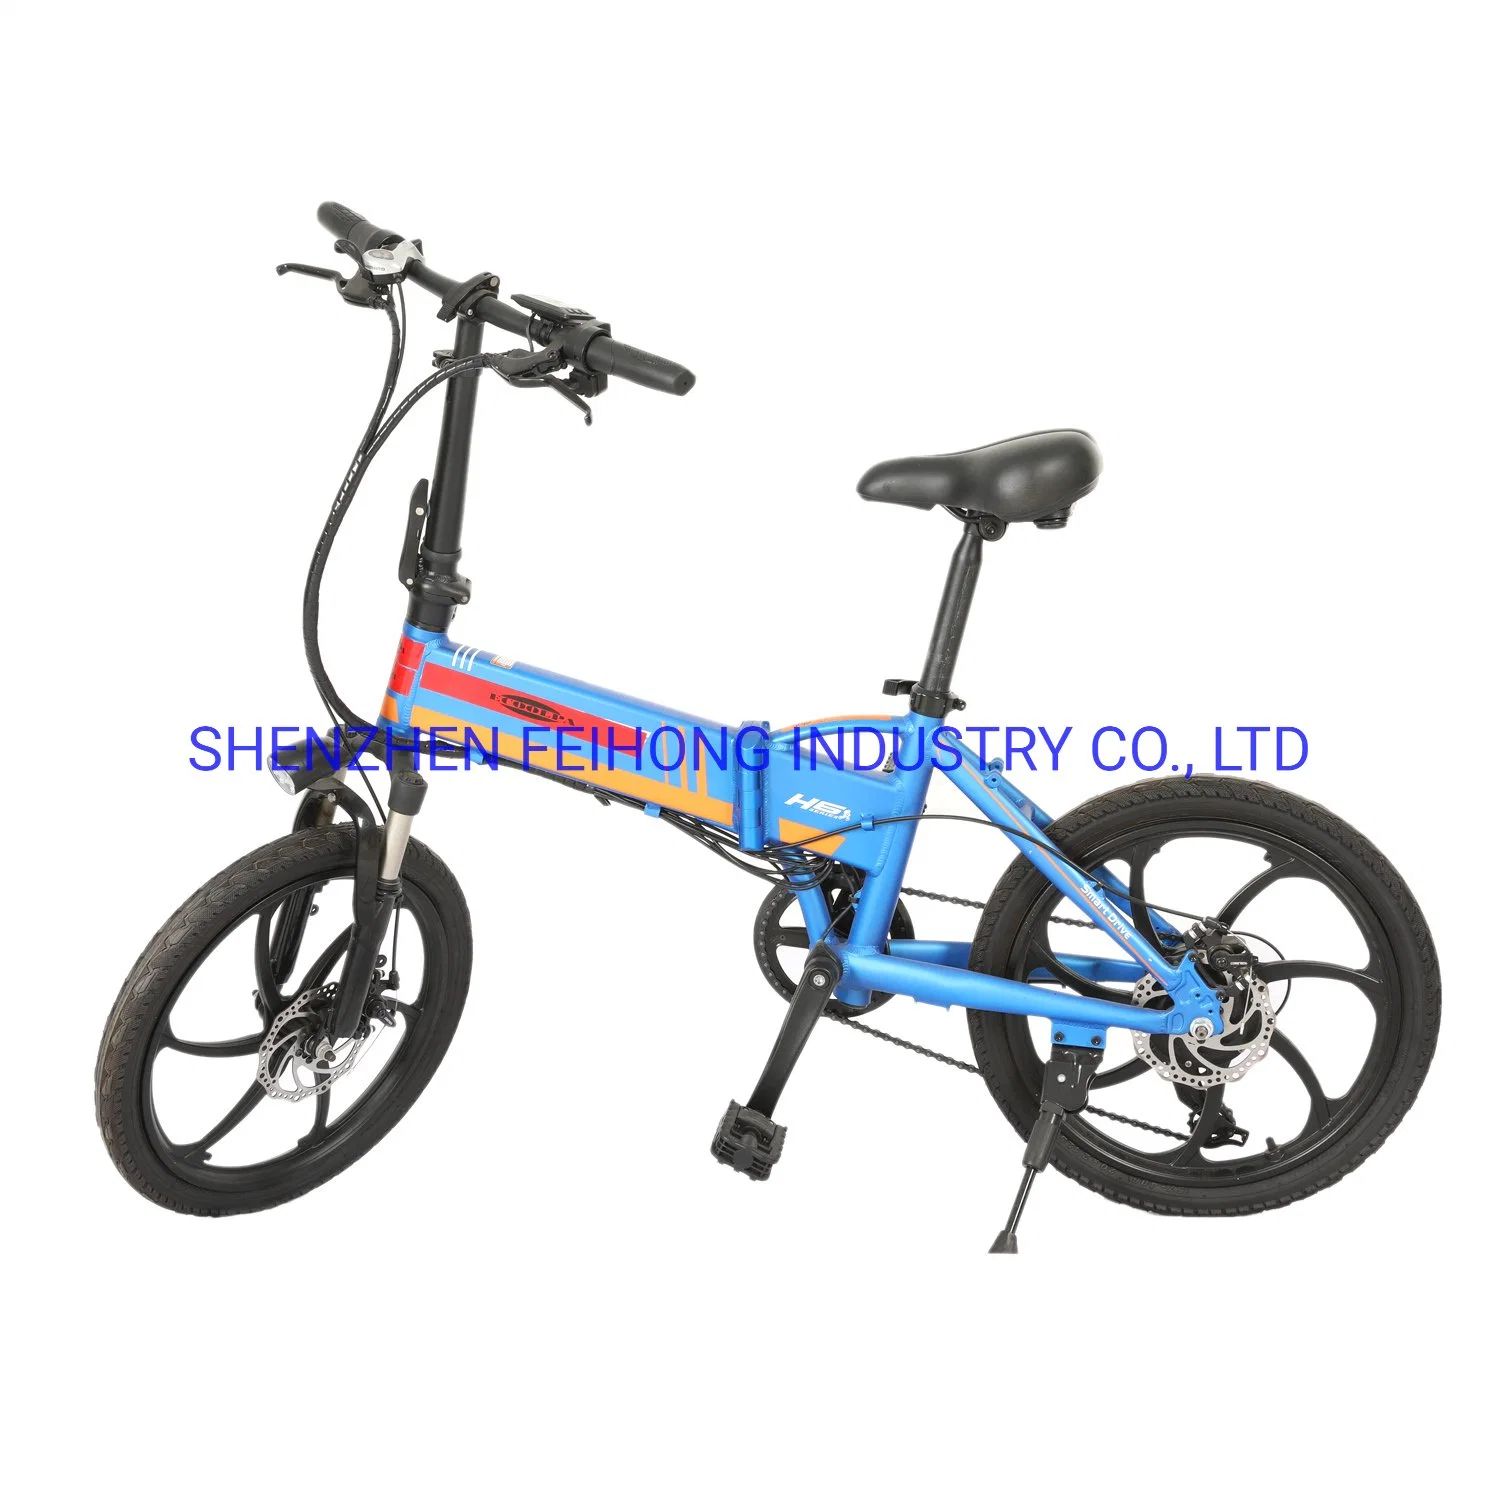 دراجة كهربائية دراجة بخارية دراجة نارية كهربائية Emotorcycle موتور سكوتر بطارية ليثيوم أيون 48 فولت 10.4ah مزودة بنظام السكوتر